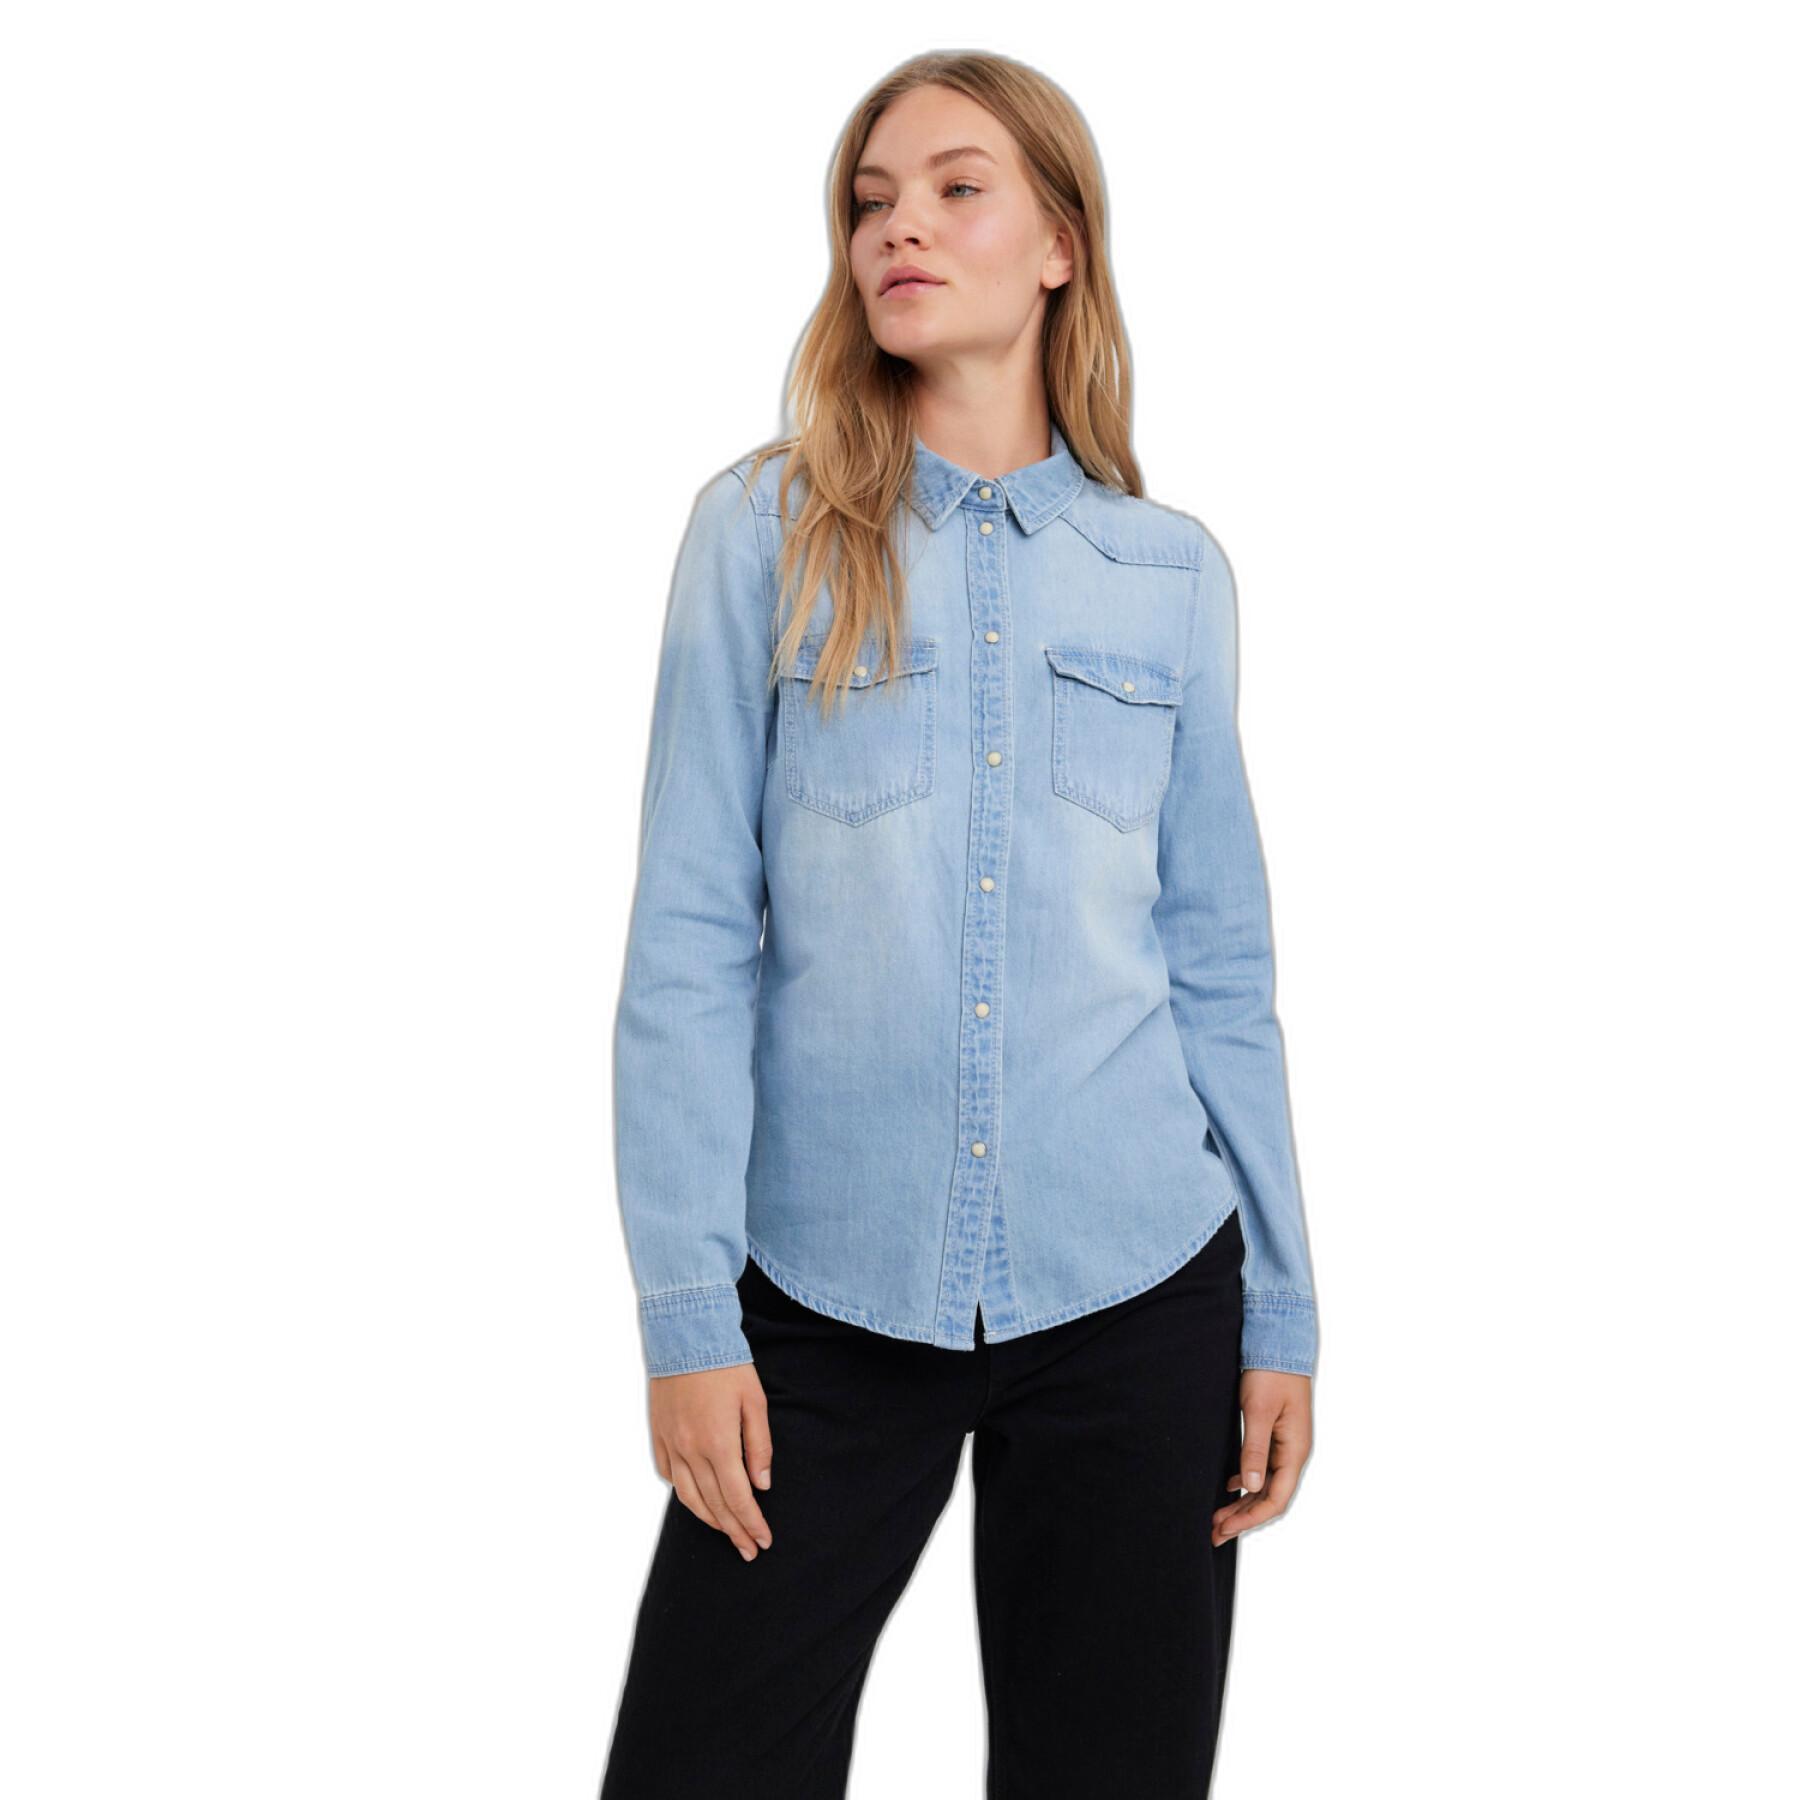 Chemise jean ajustée manches longues femme Vero Moda Maria Mix New